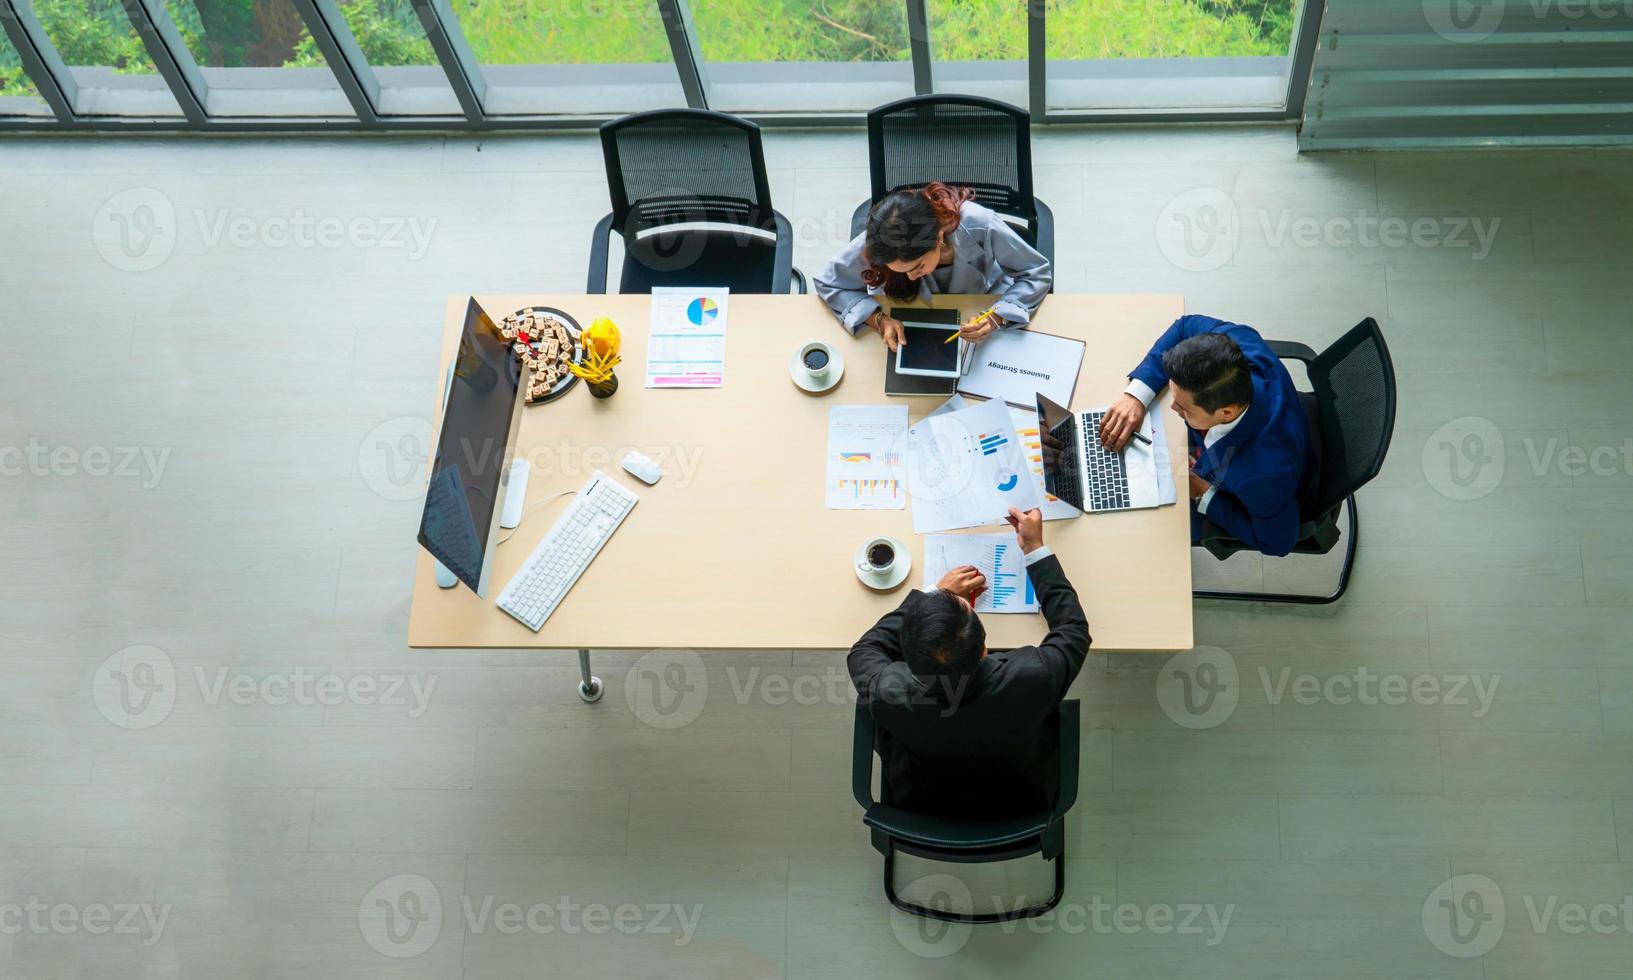 vue de dessus sur un groupe d'hommes d'affaires et de femmes d'affaires ayant une réunion et prenant un engagement commercial. photo